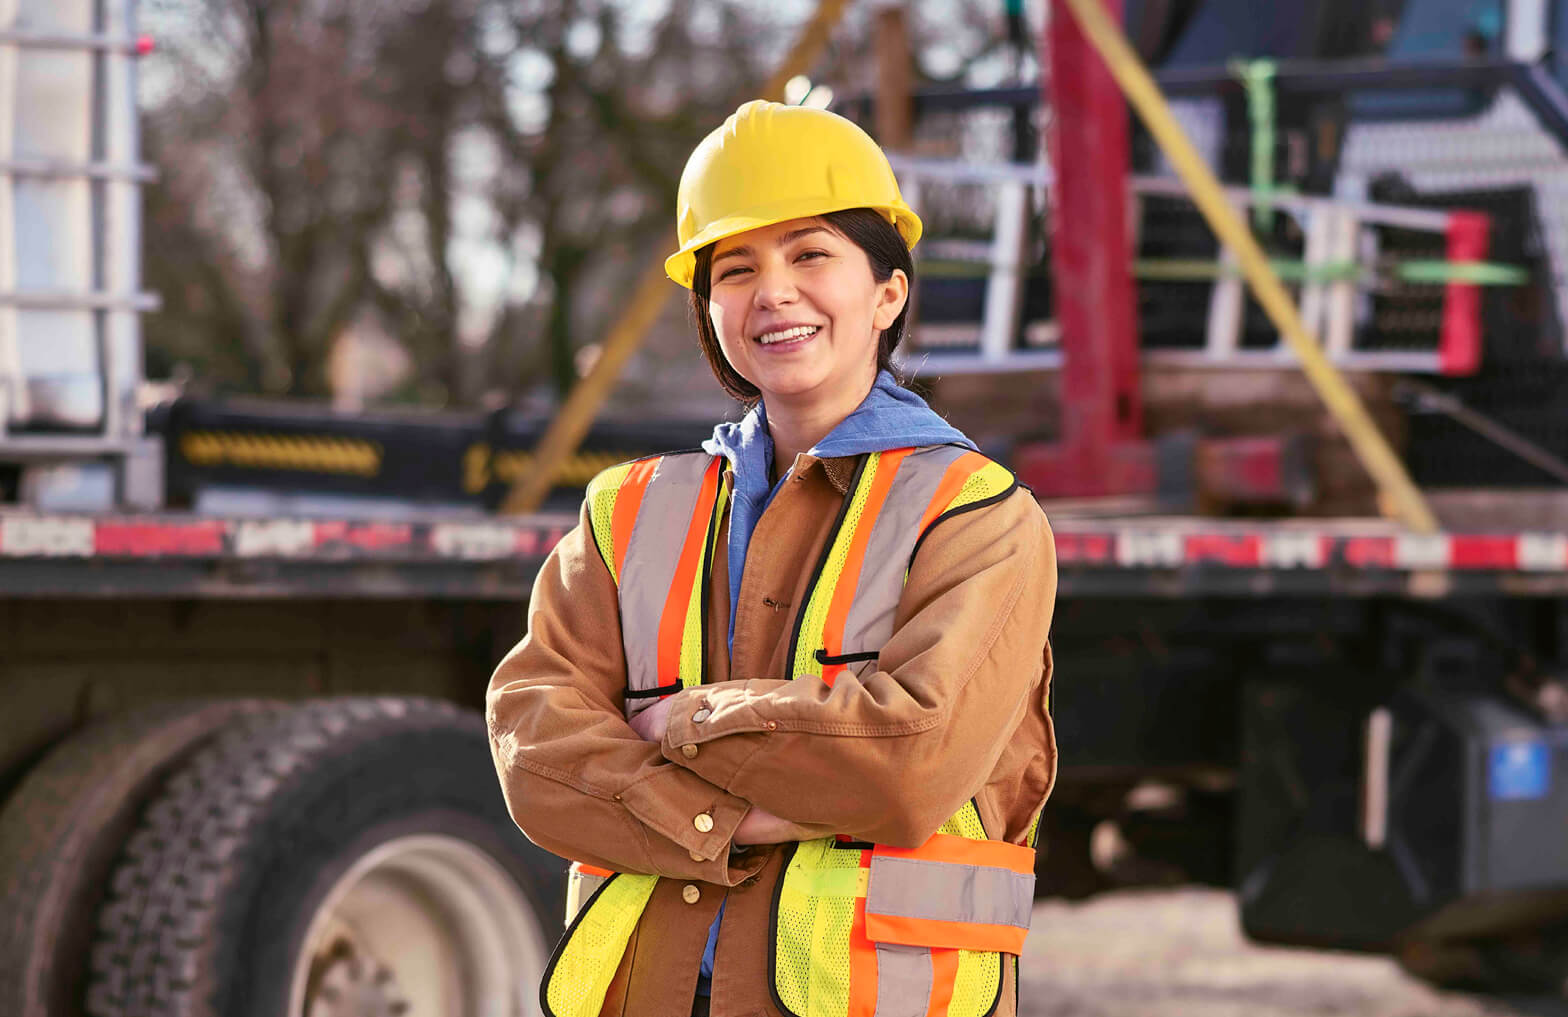 Worker wearing hard hat and hi-vis vest in front of large truck platform.